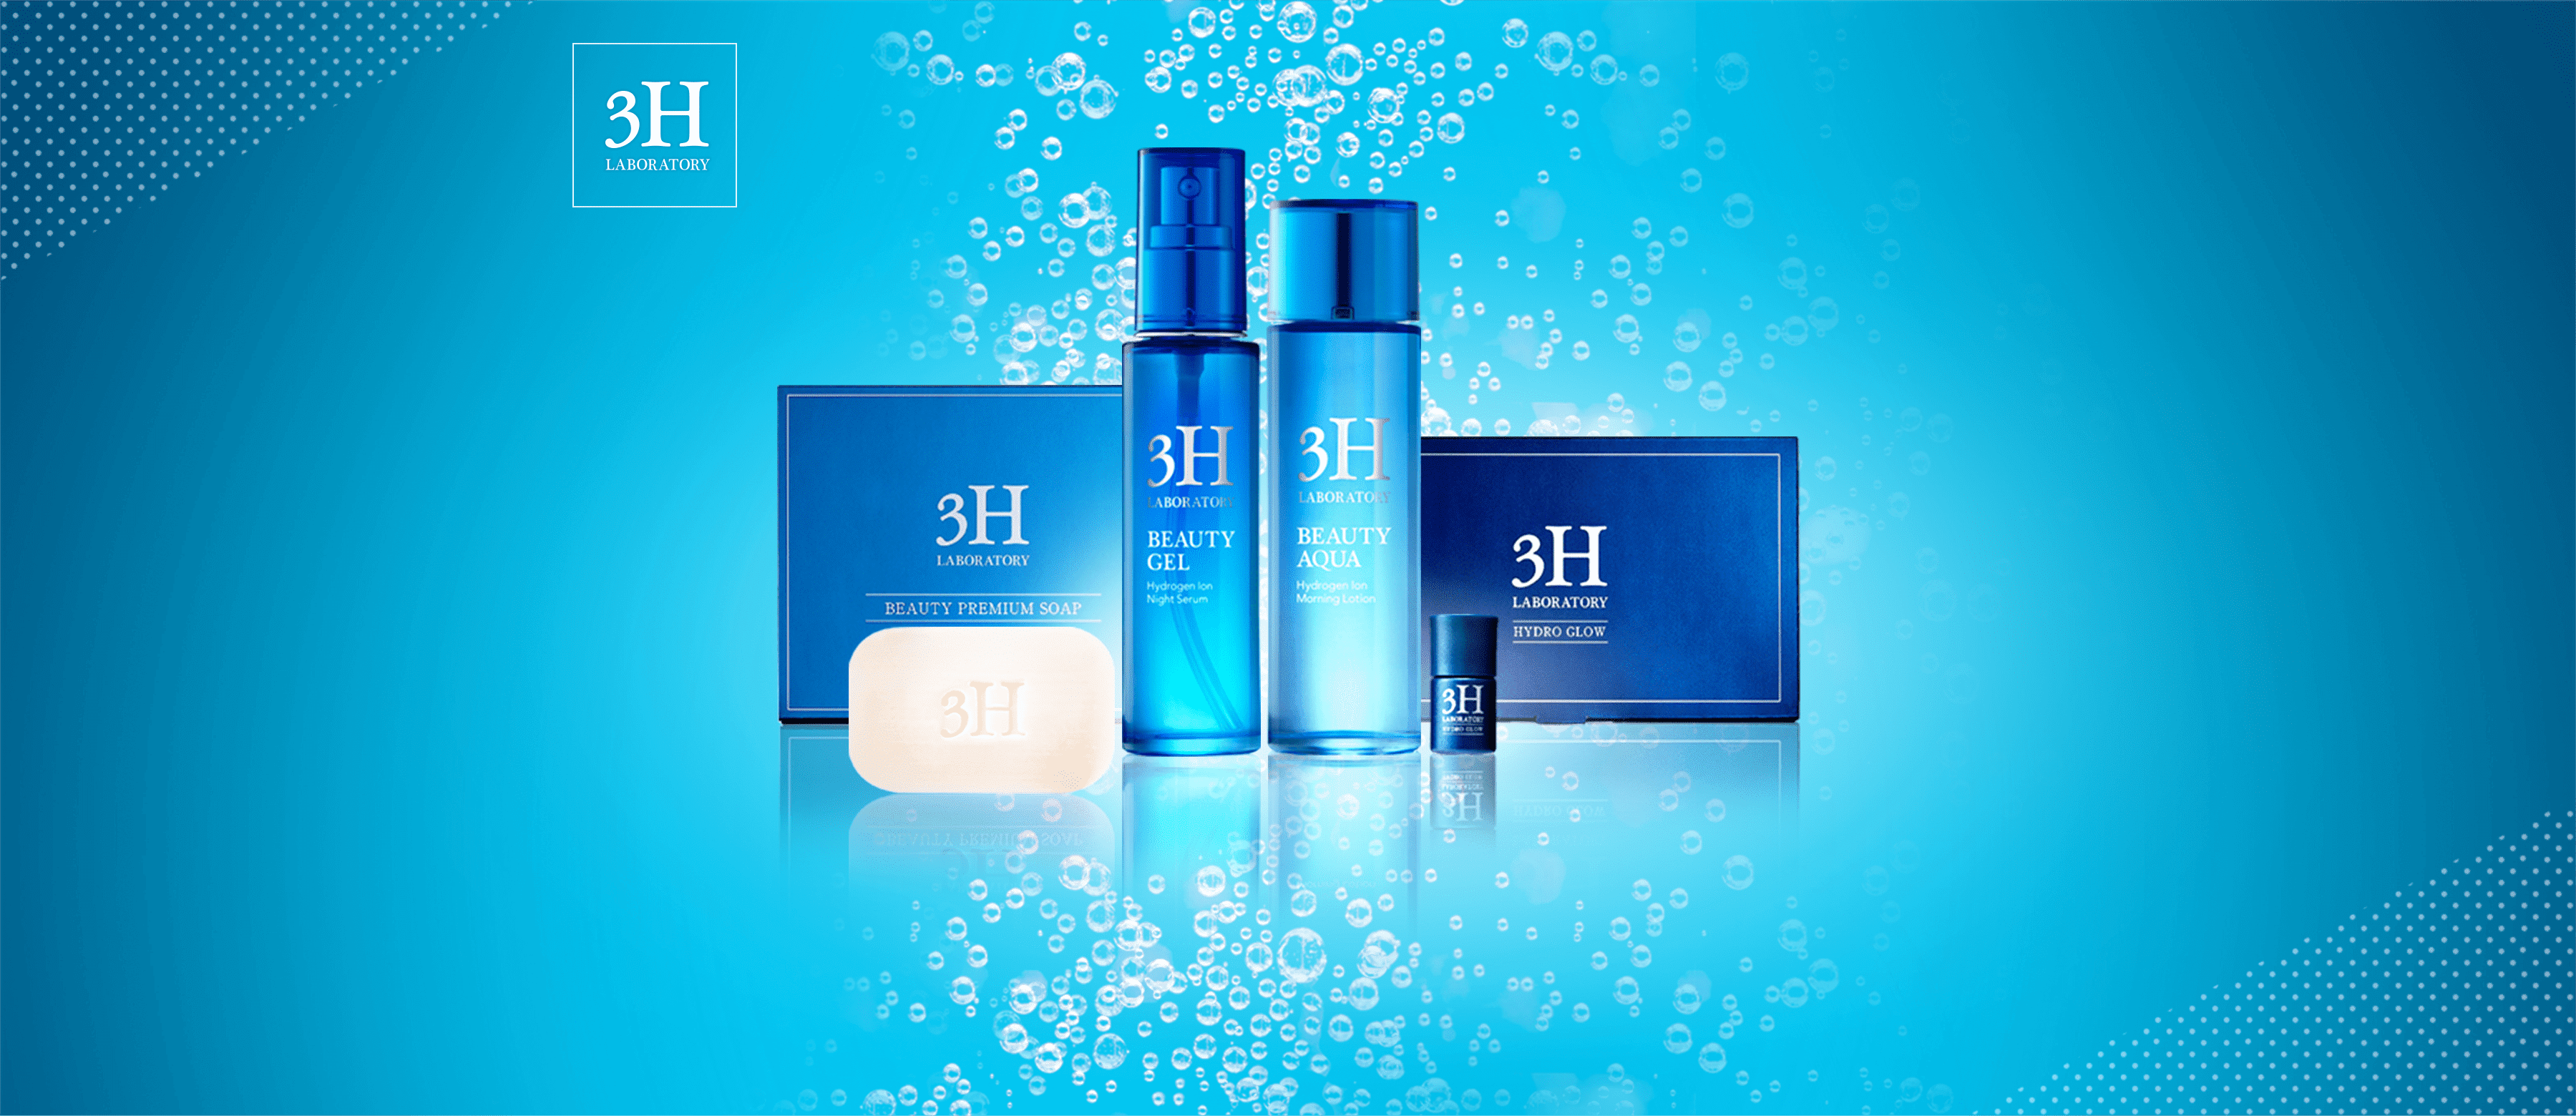 3Hは「水素のチカラ」を最大限生かした新発想の美科学基礎化粧シリーズ